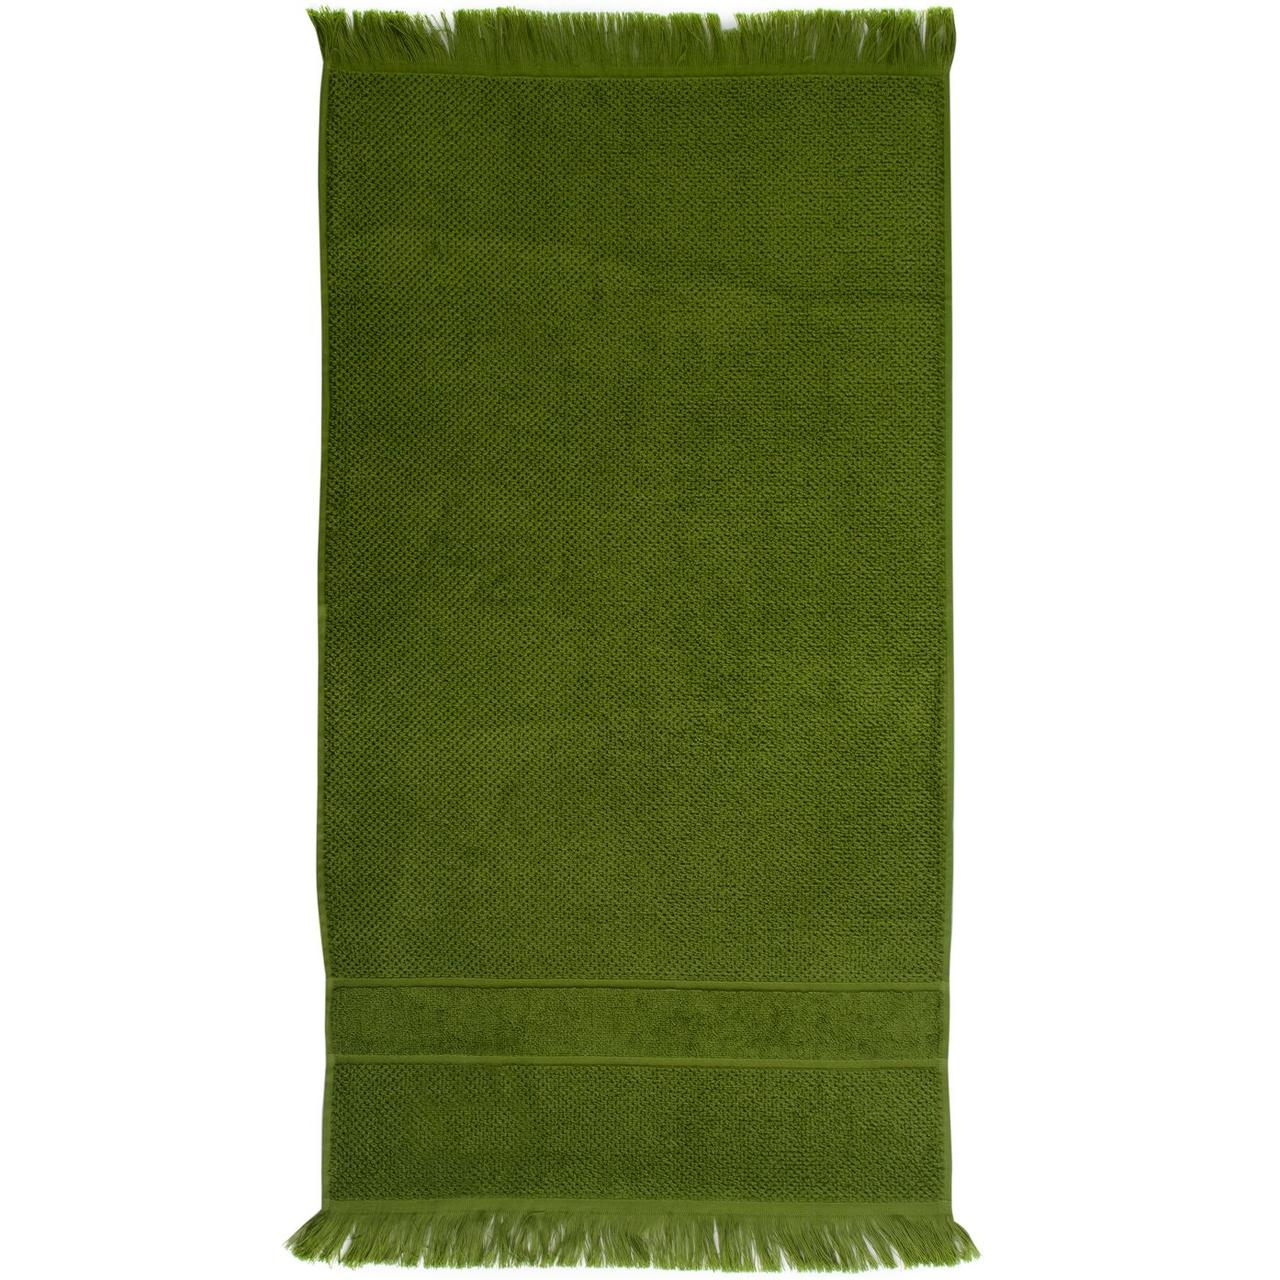 Полотенце Essential с бахромой, оливково-зеленое (артикул 10592.90), фото 1